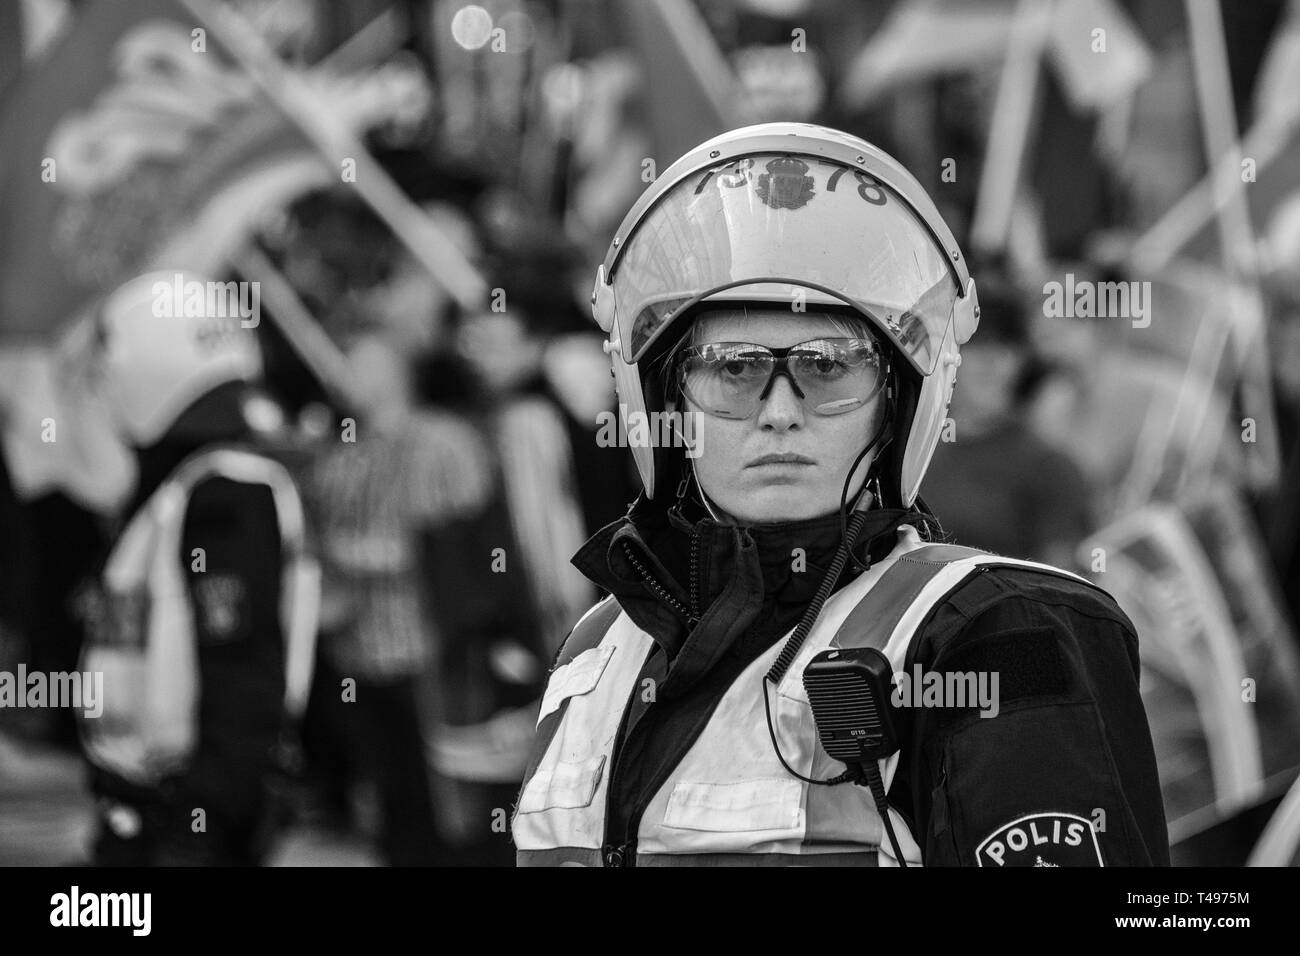 Femmina funzionario di polizia, ala destra demonstrarion Stoccolma Svezia. Foto Stock